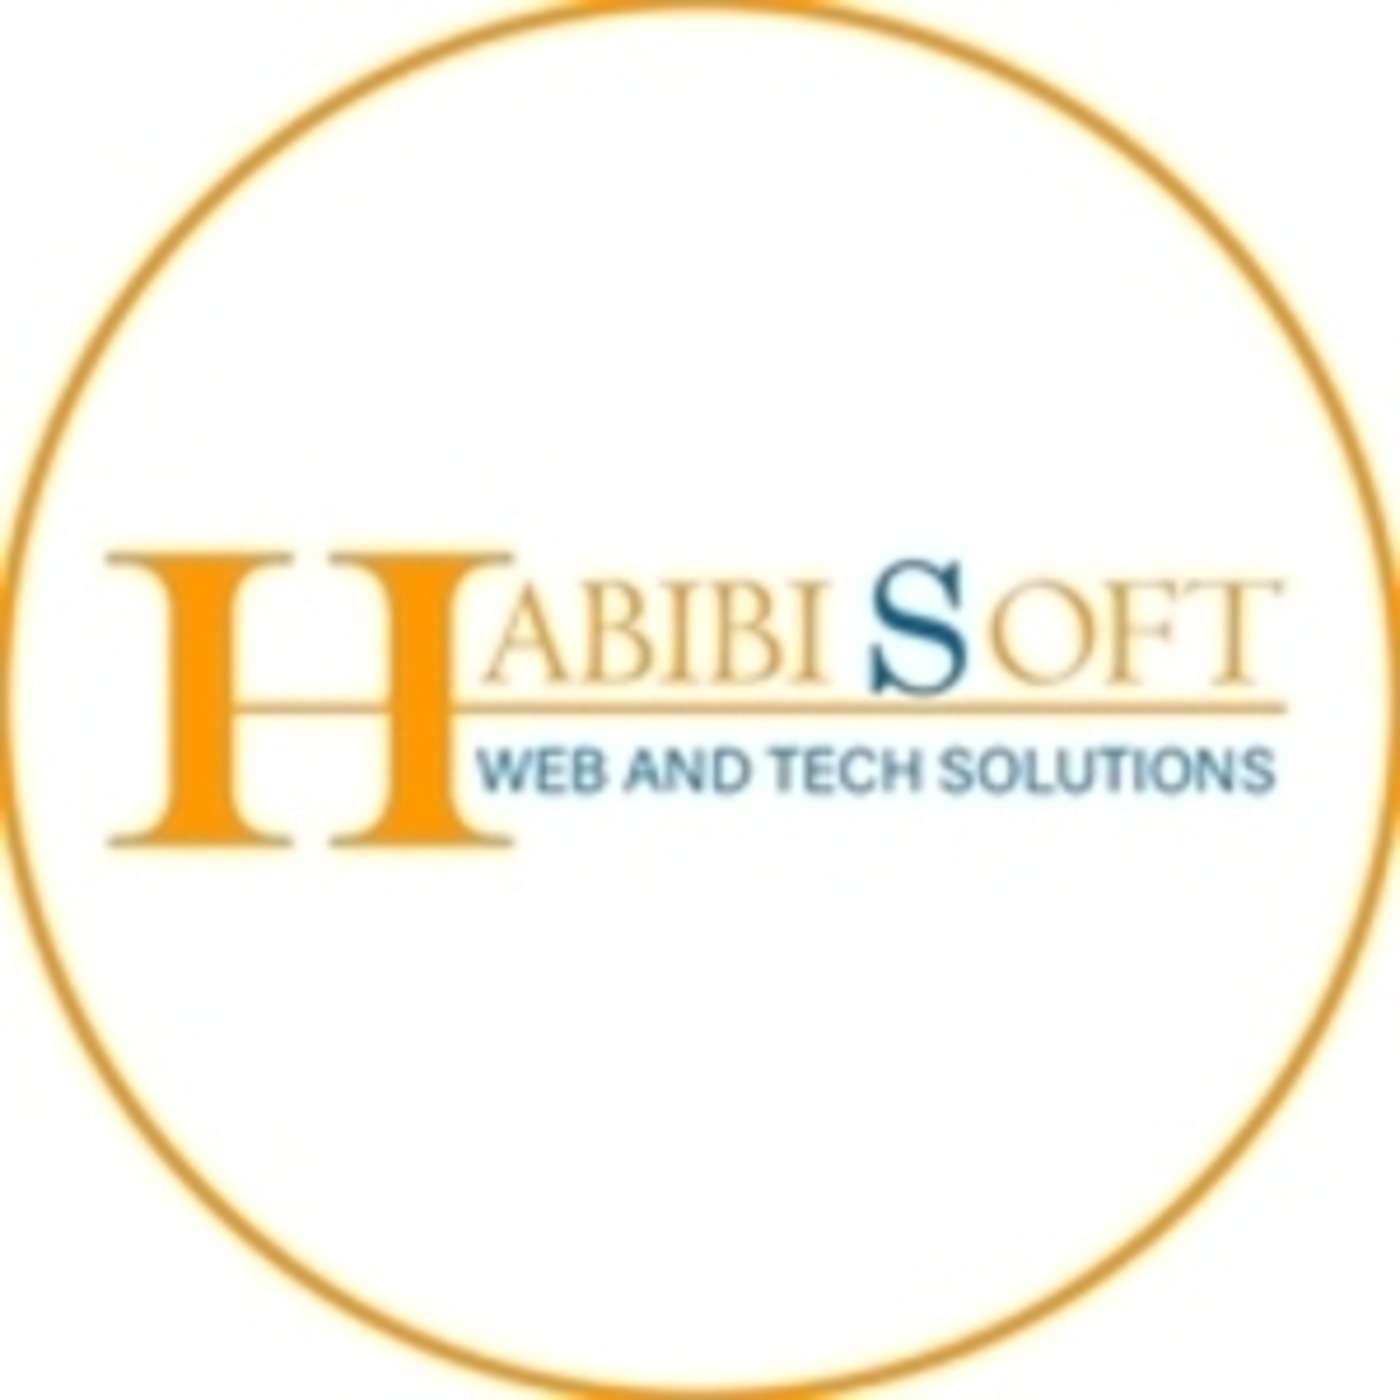 Habibisoft Dubai Profile Picture